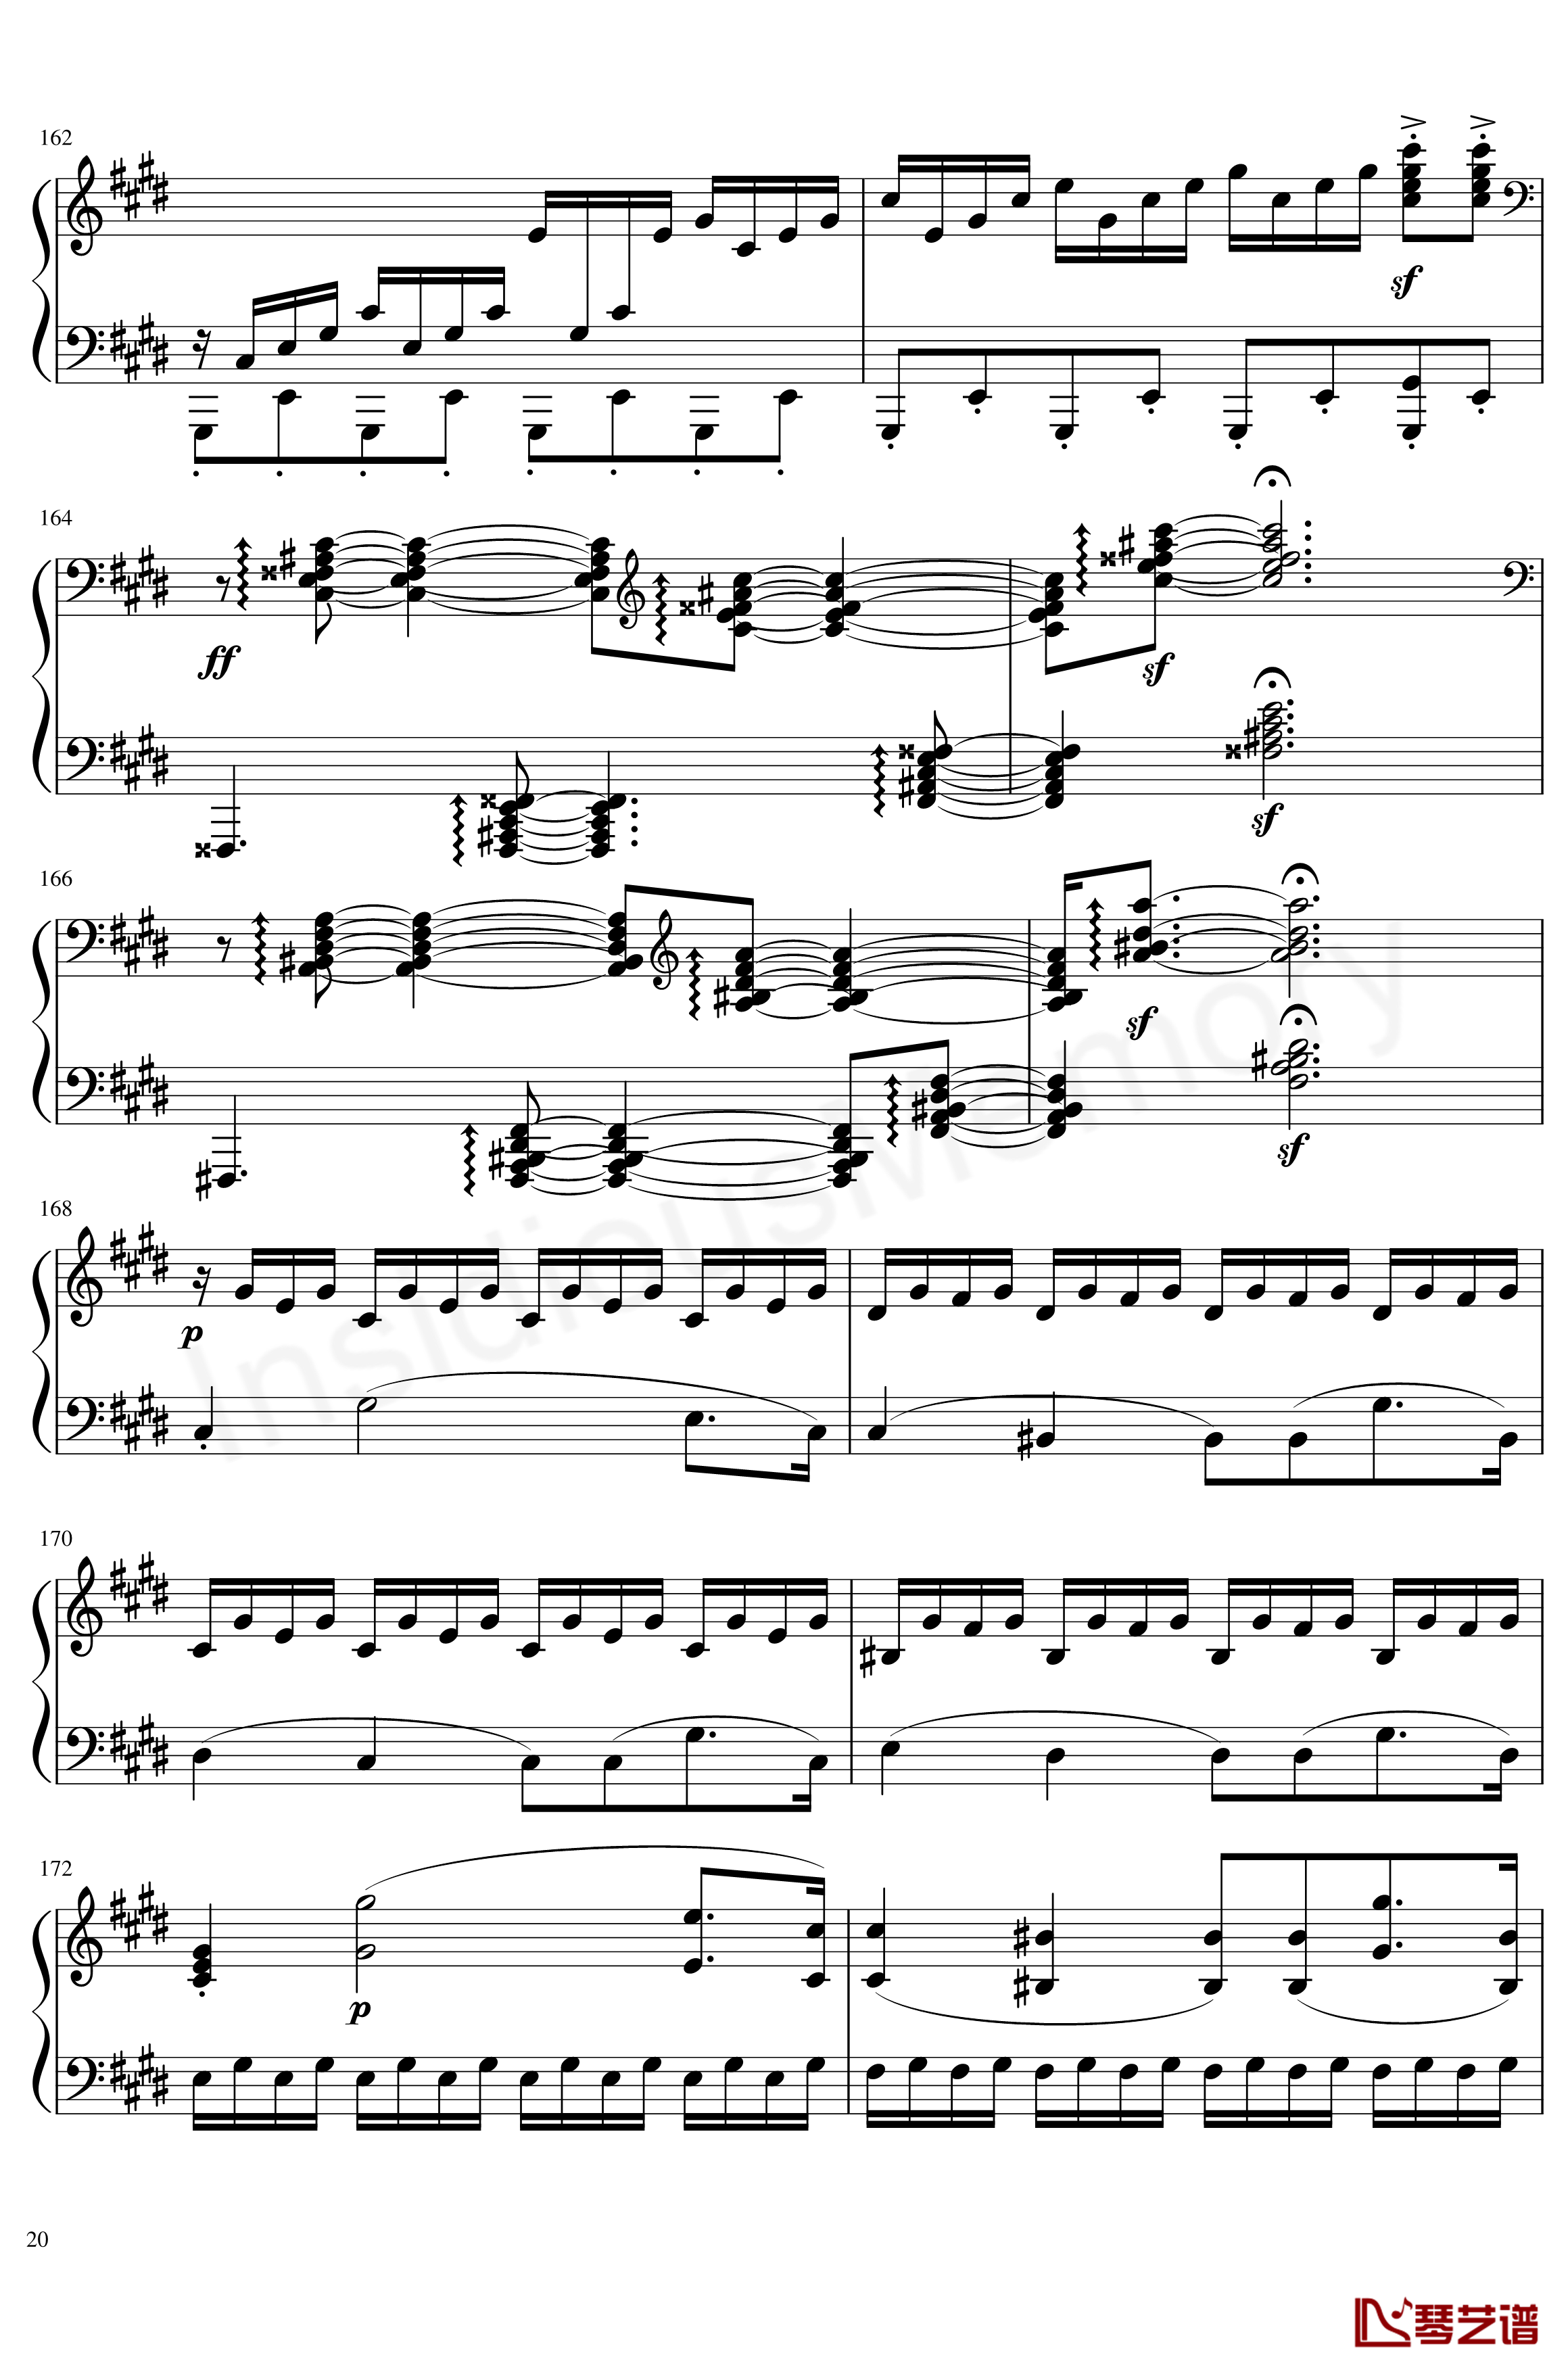 月光奏鸣曲钢琴谱-贝多芬-beethoven20